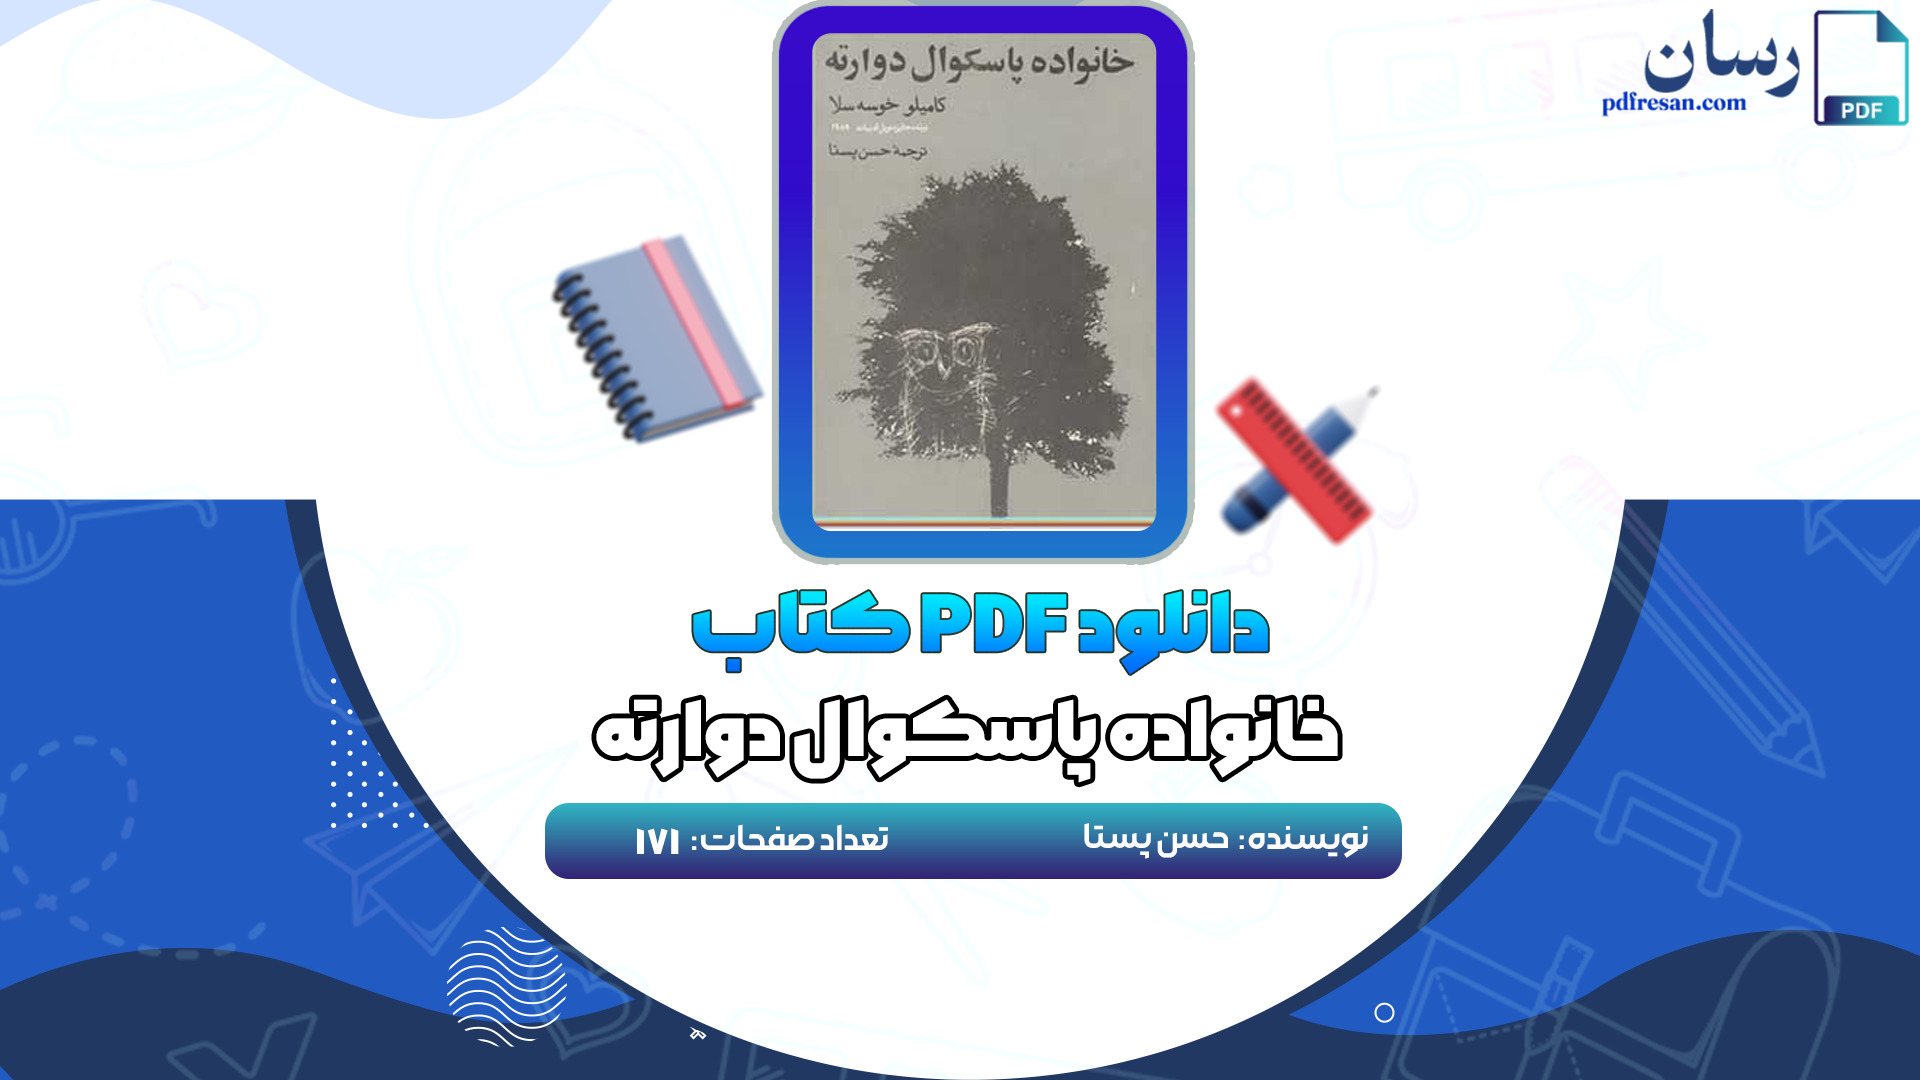 دانلود کتاب خانواده پاسکوال دوارته حسن پستا PDF